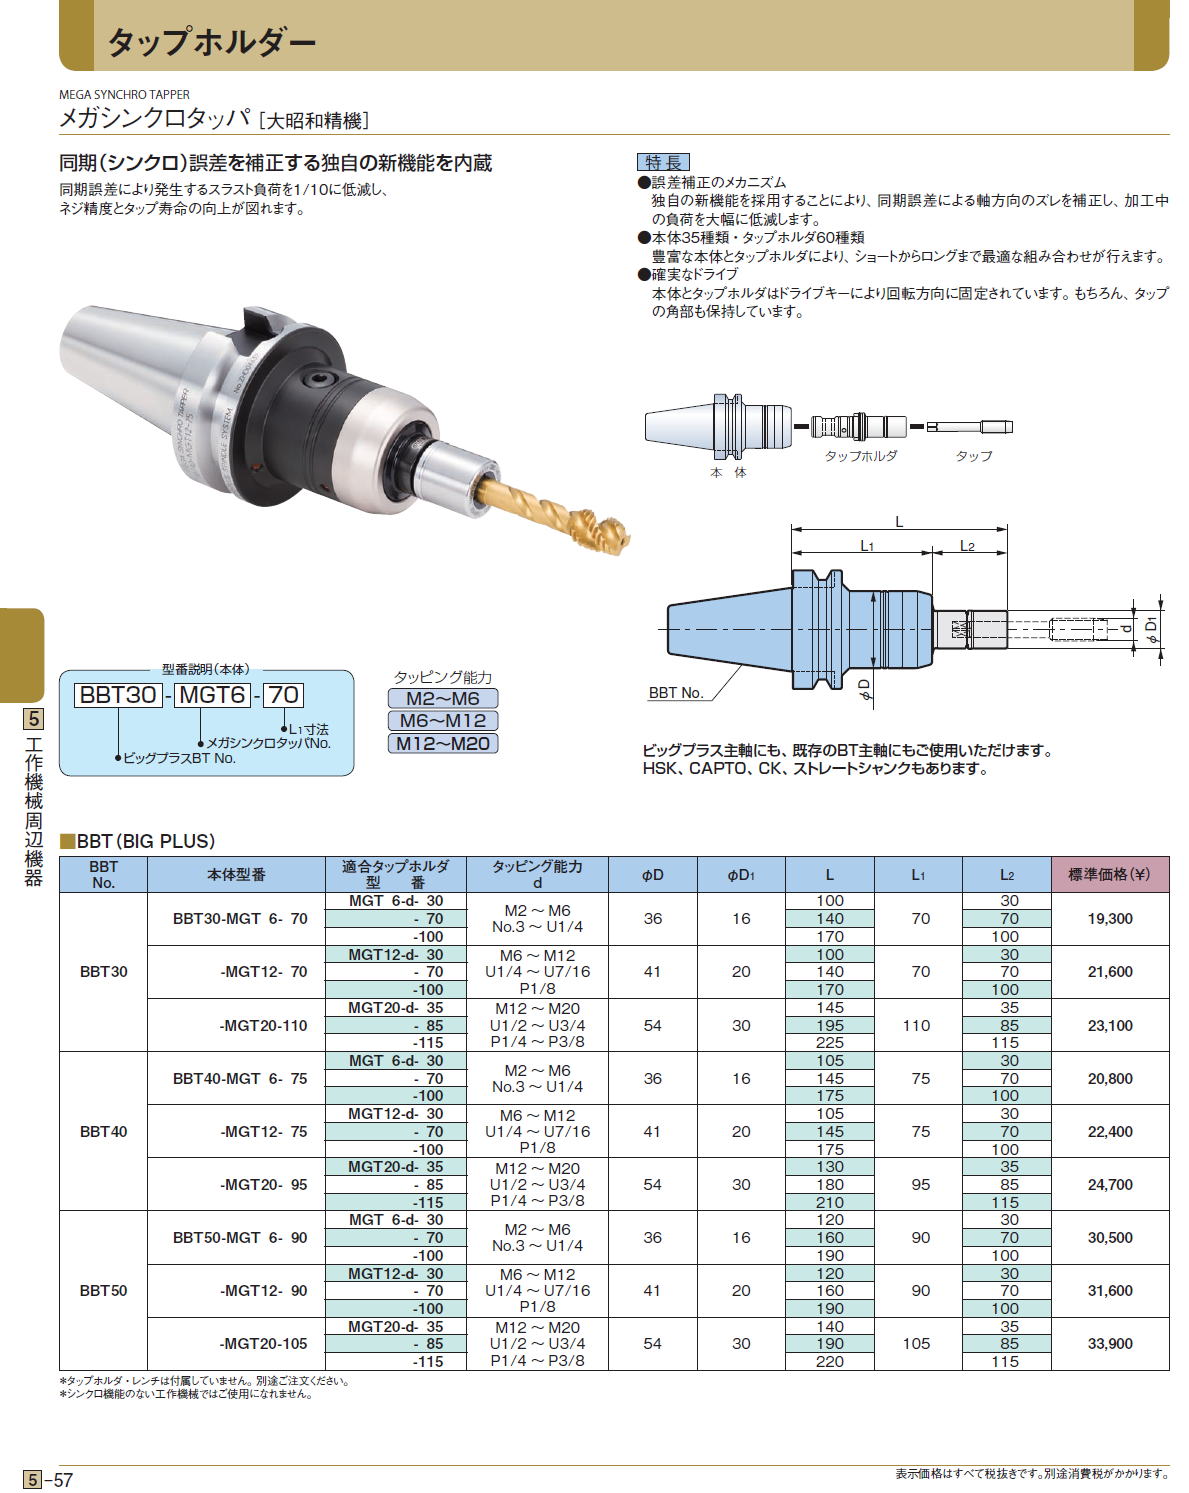 大昭和精機:タップホルダ MGT12-M12-70 切削 研磨 測定用品-